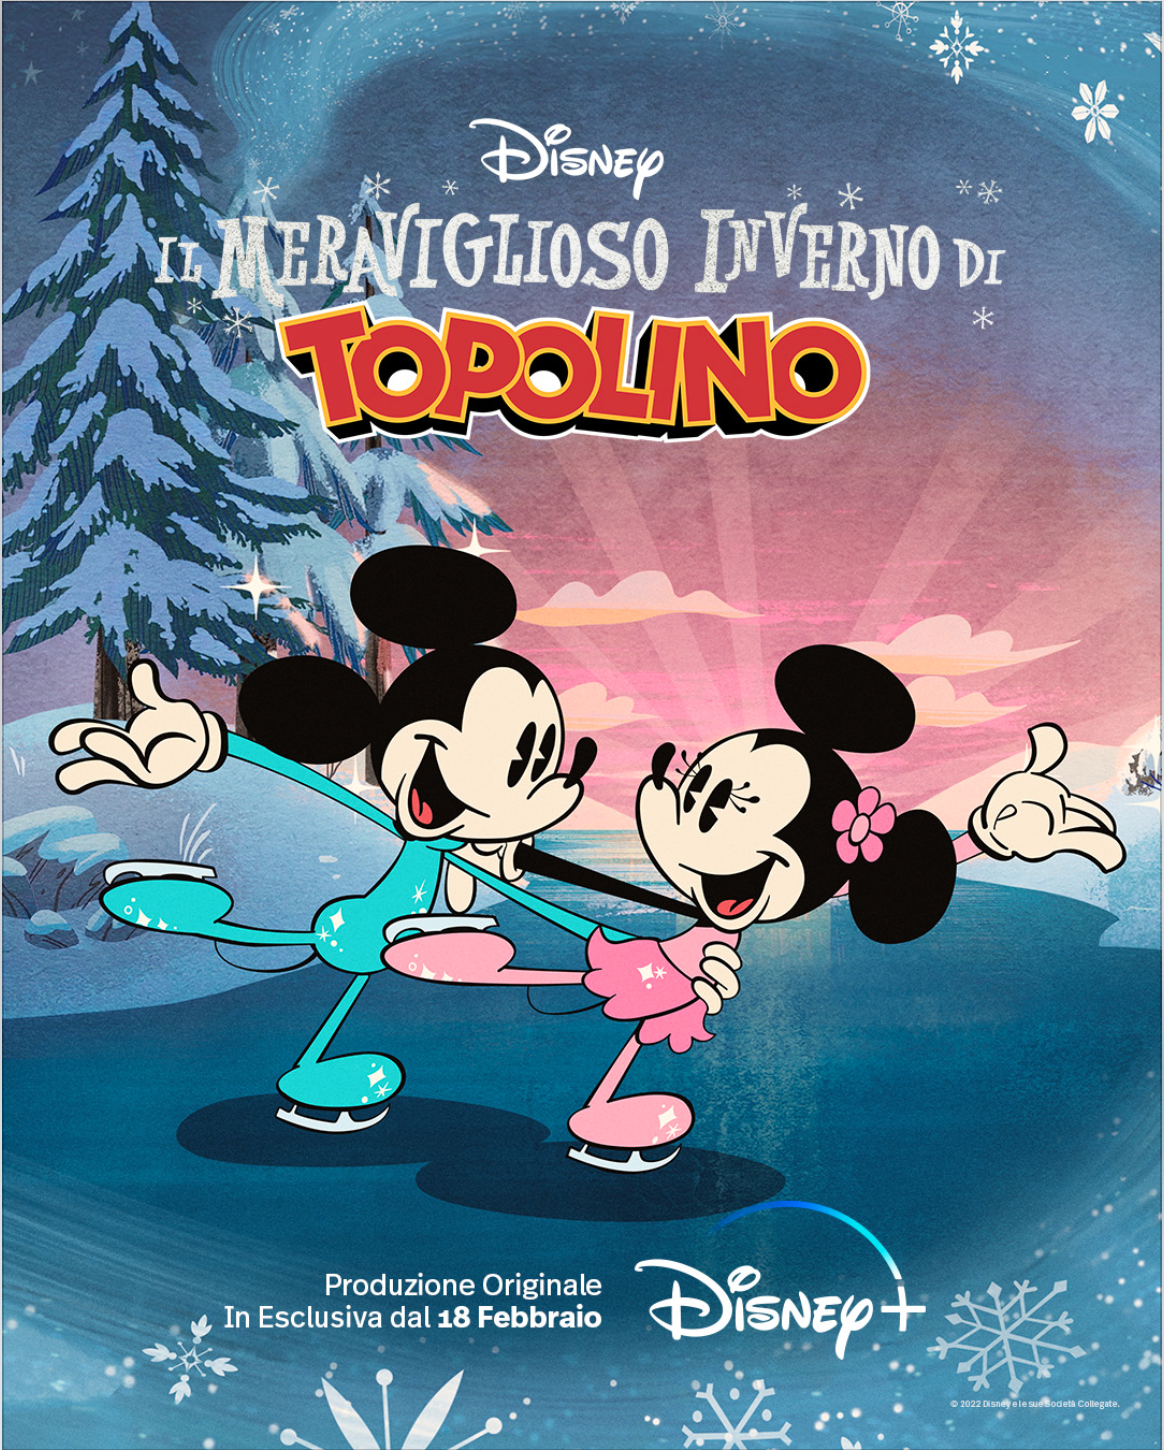 Il meraviglioso inverno di Topolino. Disney+ diffonde il trailer e la key art